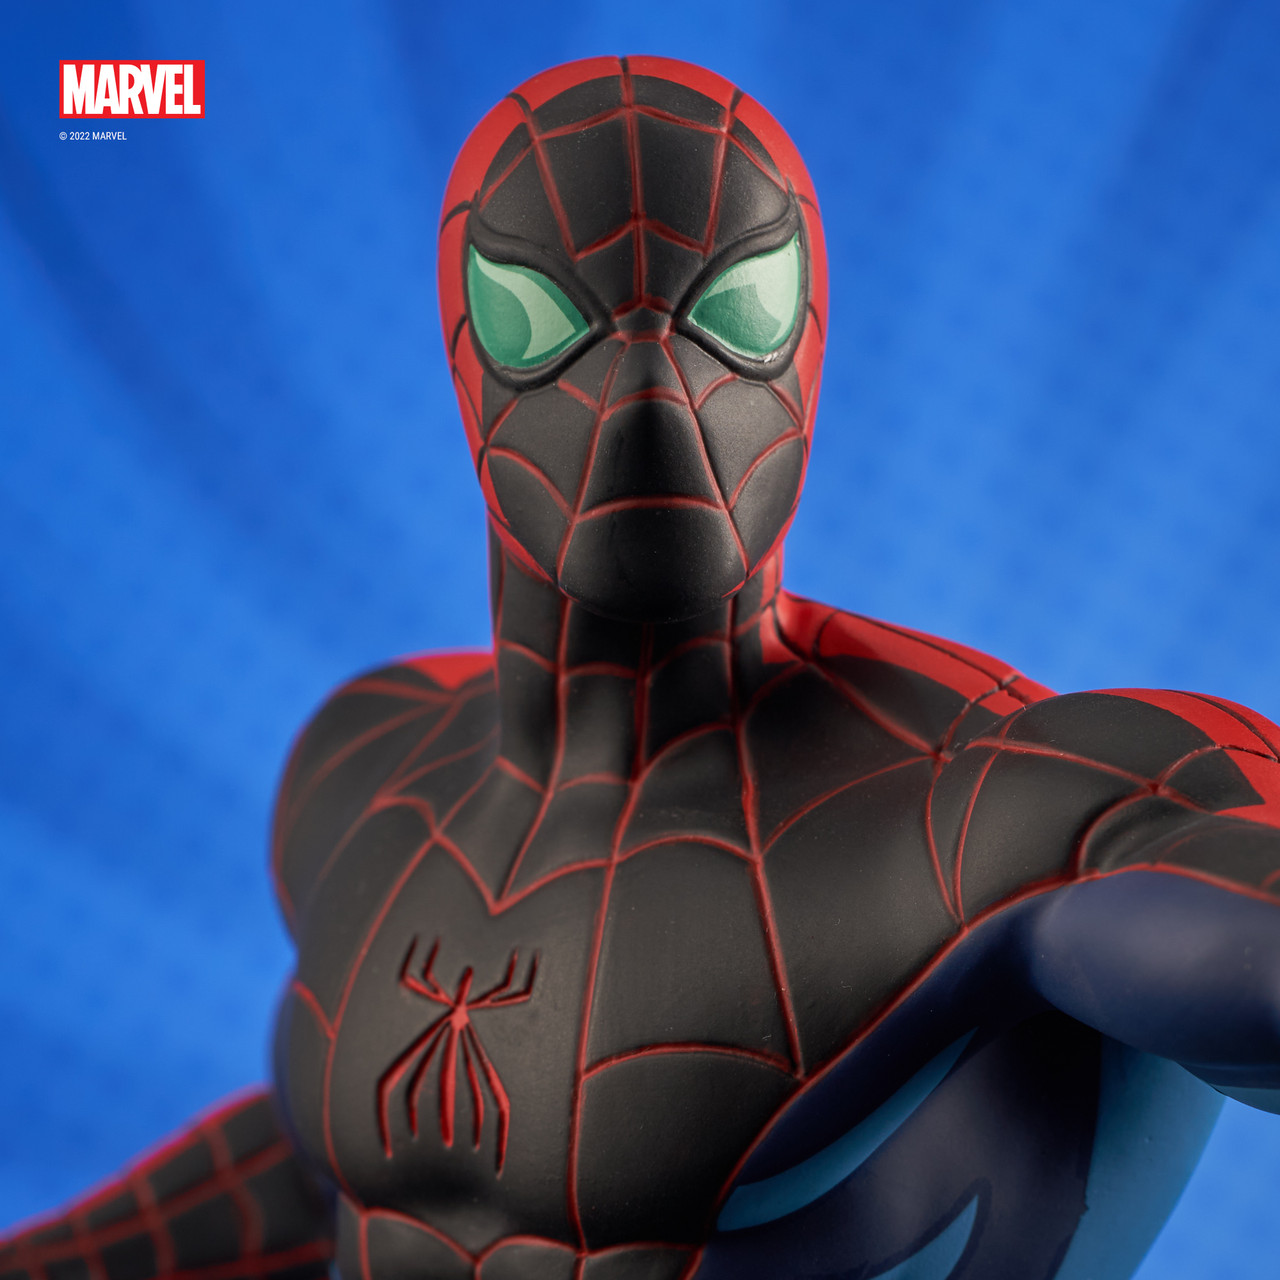 Vesting Nauwkeurigheid Grof Spider-Man: The Animated Series - Spider-Man (Spider-Sense) Animated Bust -  San Diego 2022 Exclusive